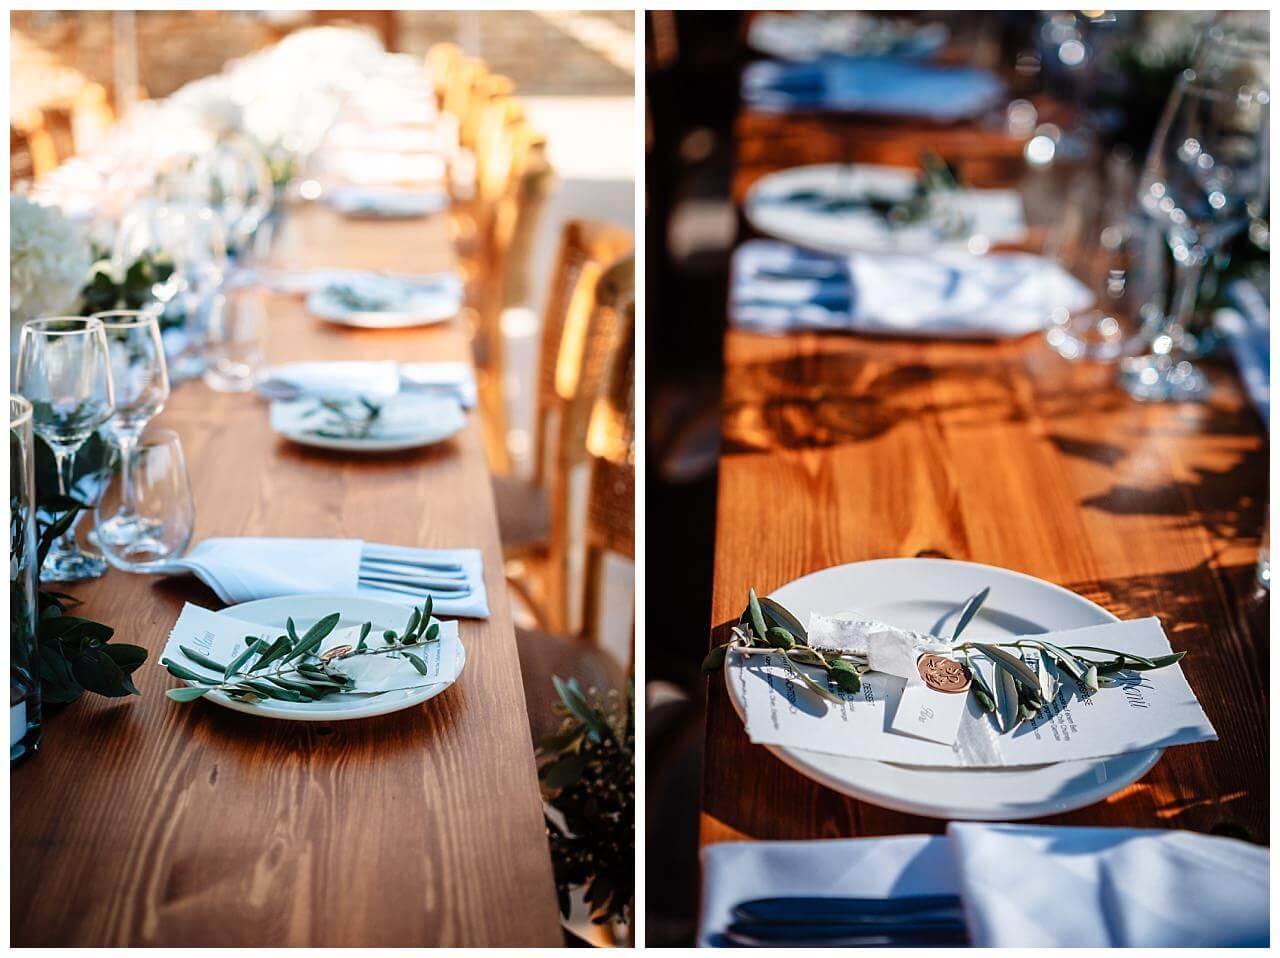 Tischdekoration in weiß und dunkelgrünen Blättern auf einen Dunkel braunen Tisch bei einer Hochzeit in einer Finka in Istrien Kroatien